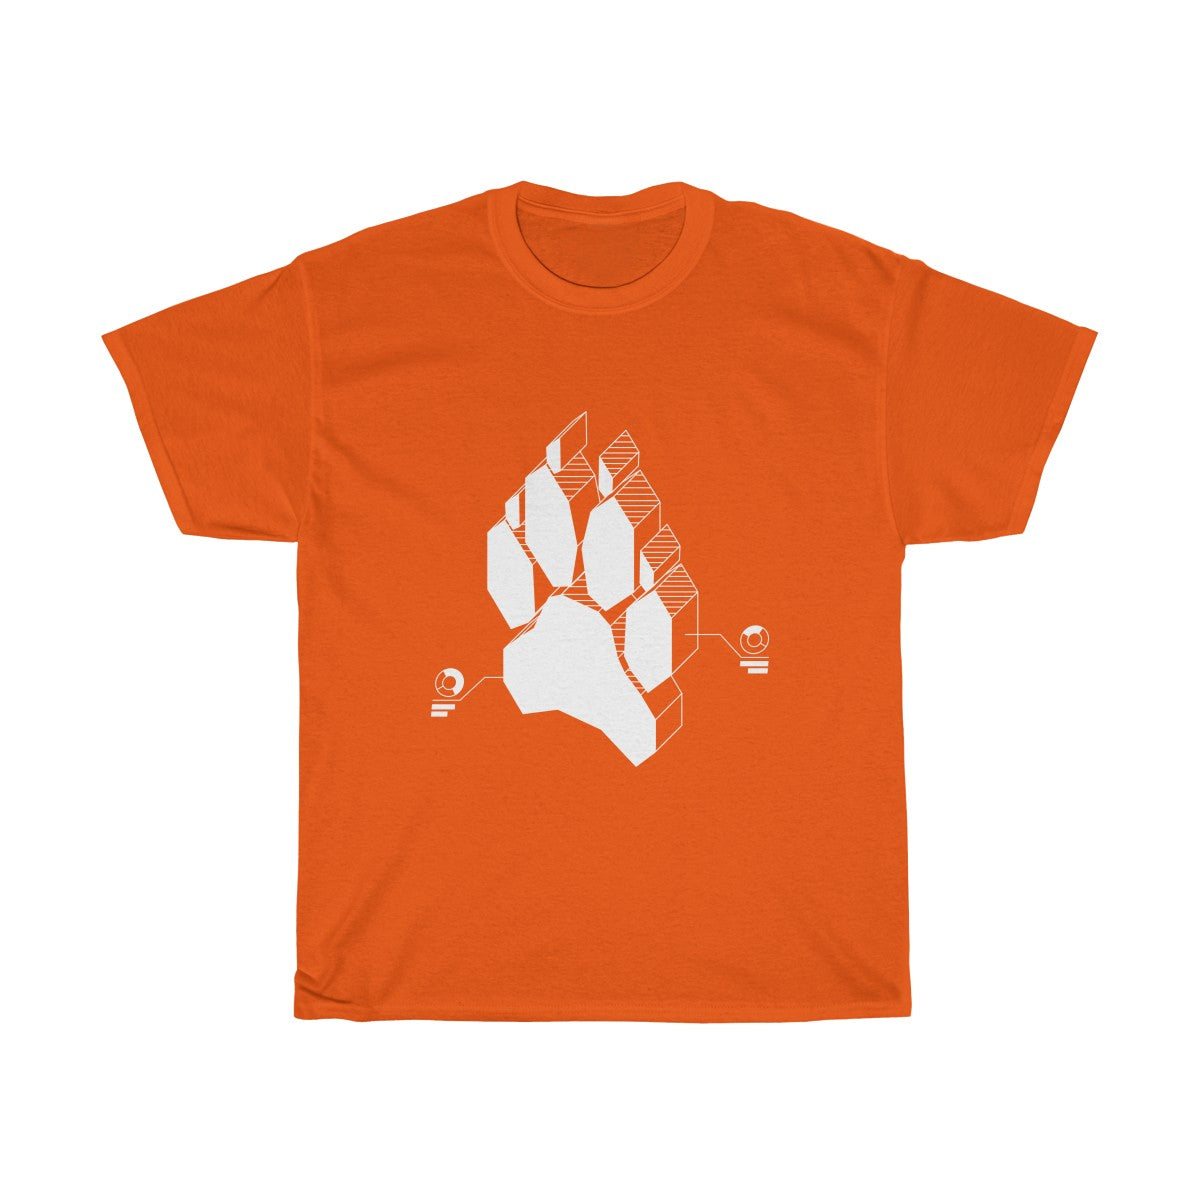 Techno Canine - T-Shirt T-Shirt Wexon Orange S 